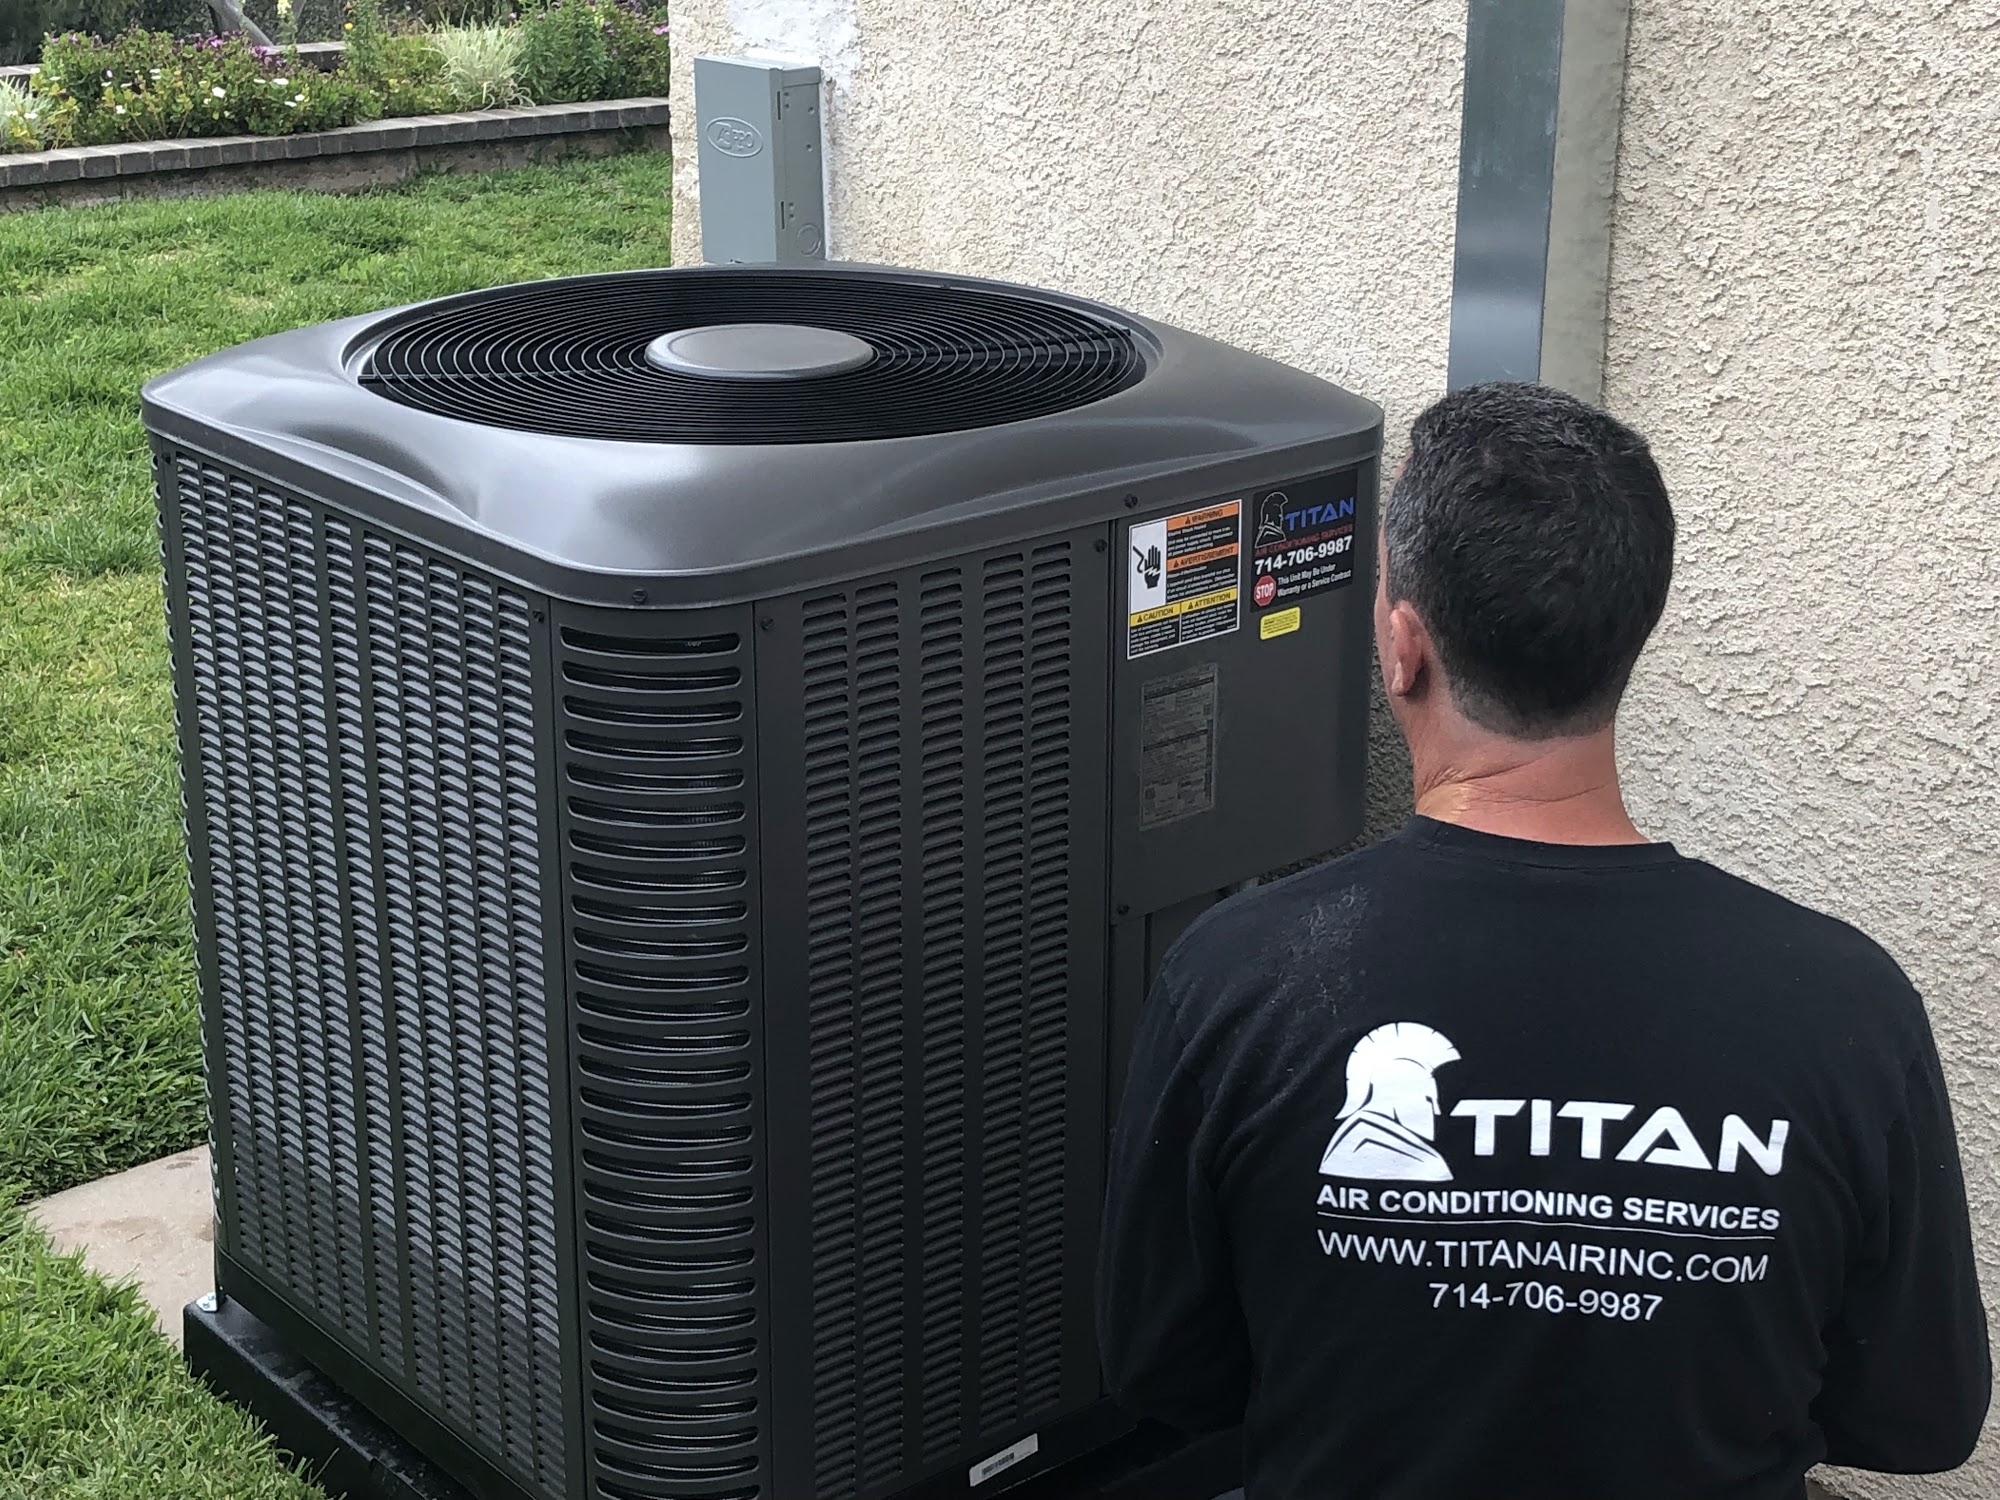 Titan Air Conditioning Inc.